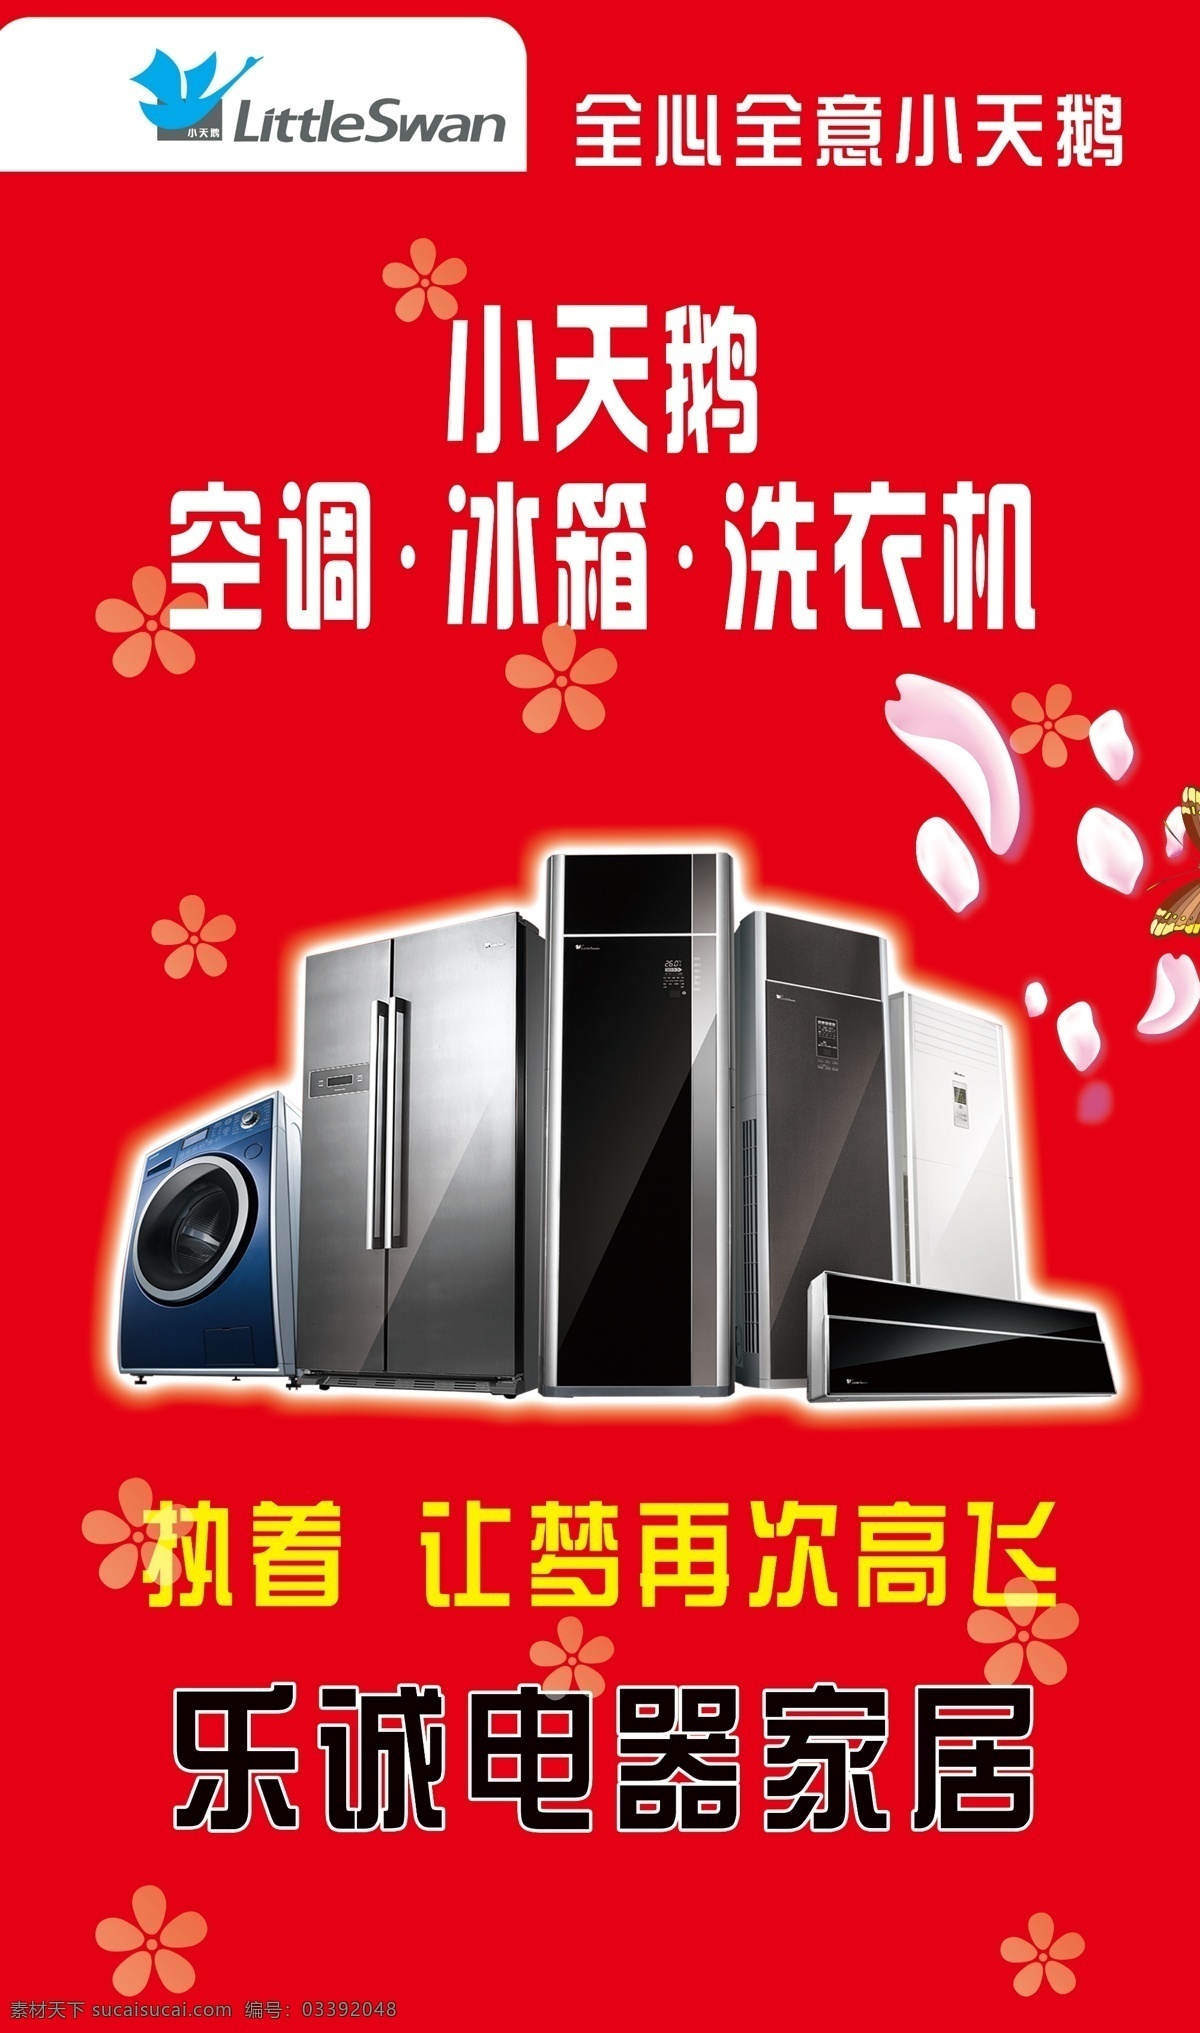 小天鹅电器 空调 冰箱 洗衣机 广告 海报 家电 室外广告设计